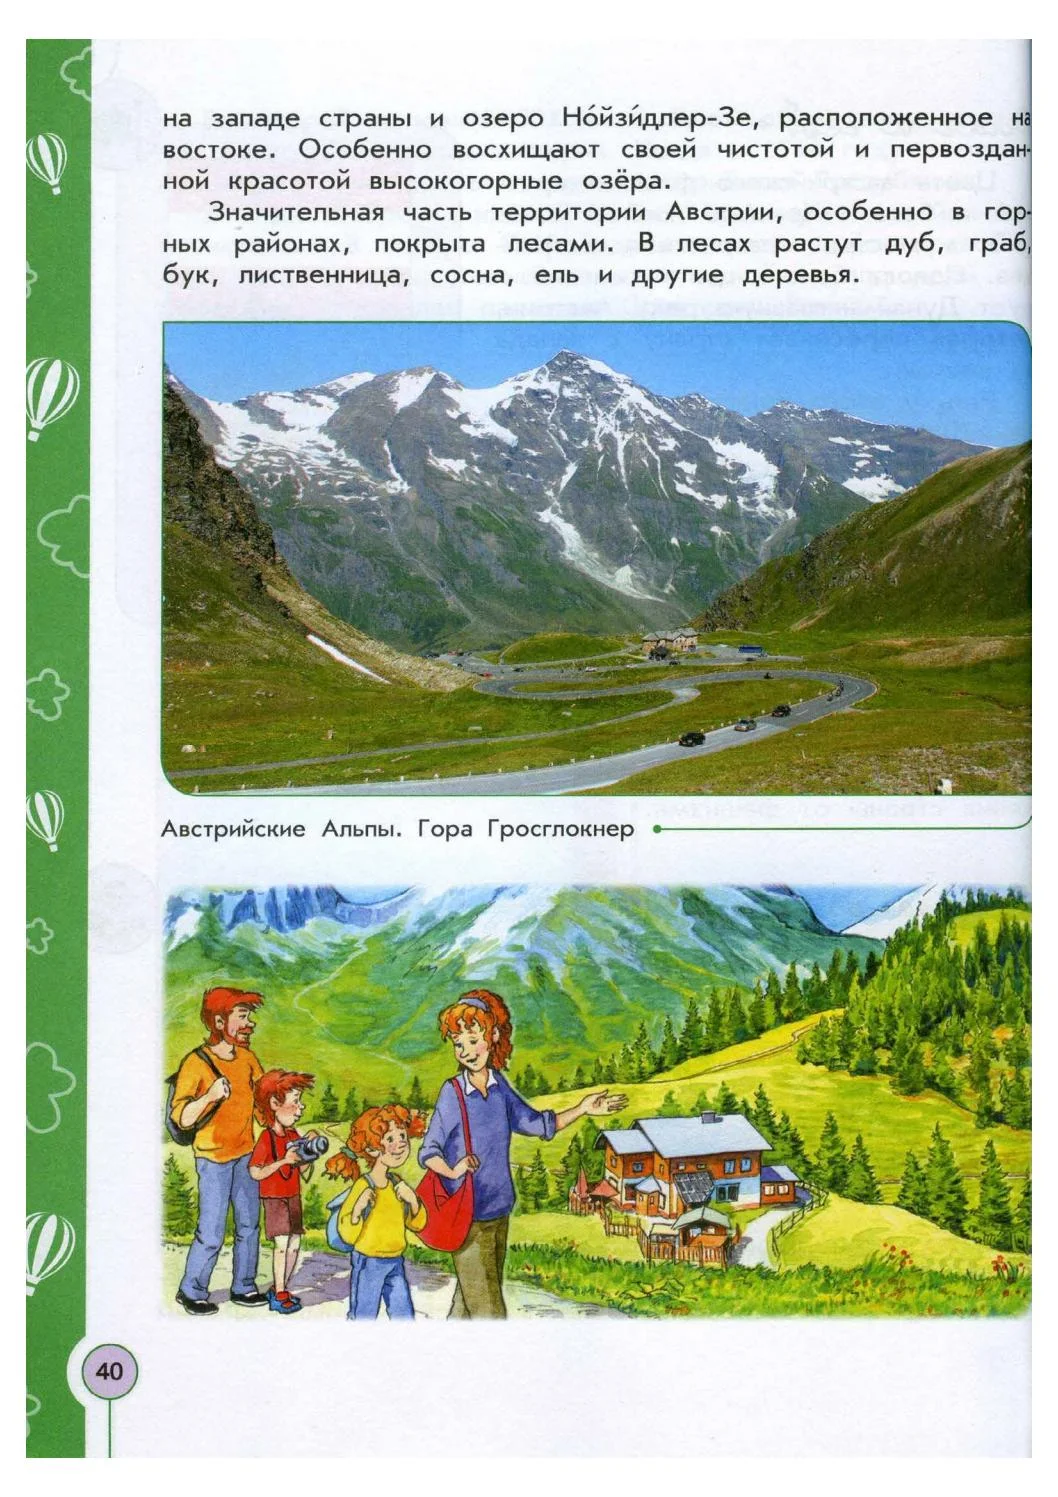 Природа и охрана австрии. Австрия природа и ее охрана. Интересные факты о природе Австрии. Важная информация о природе Австрии и ее охране.